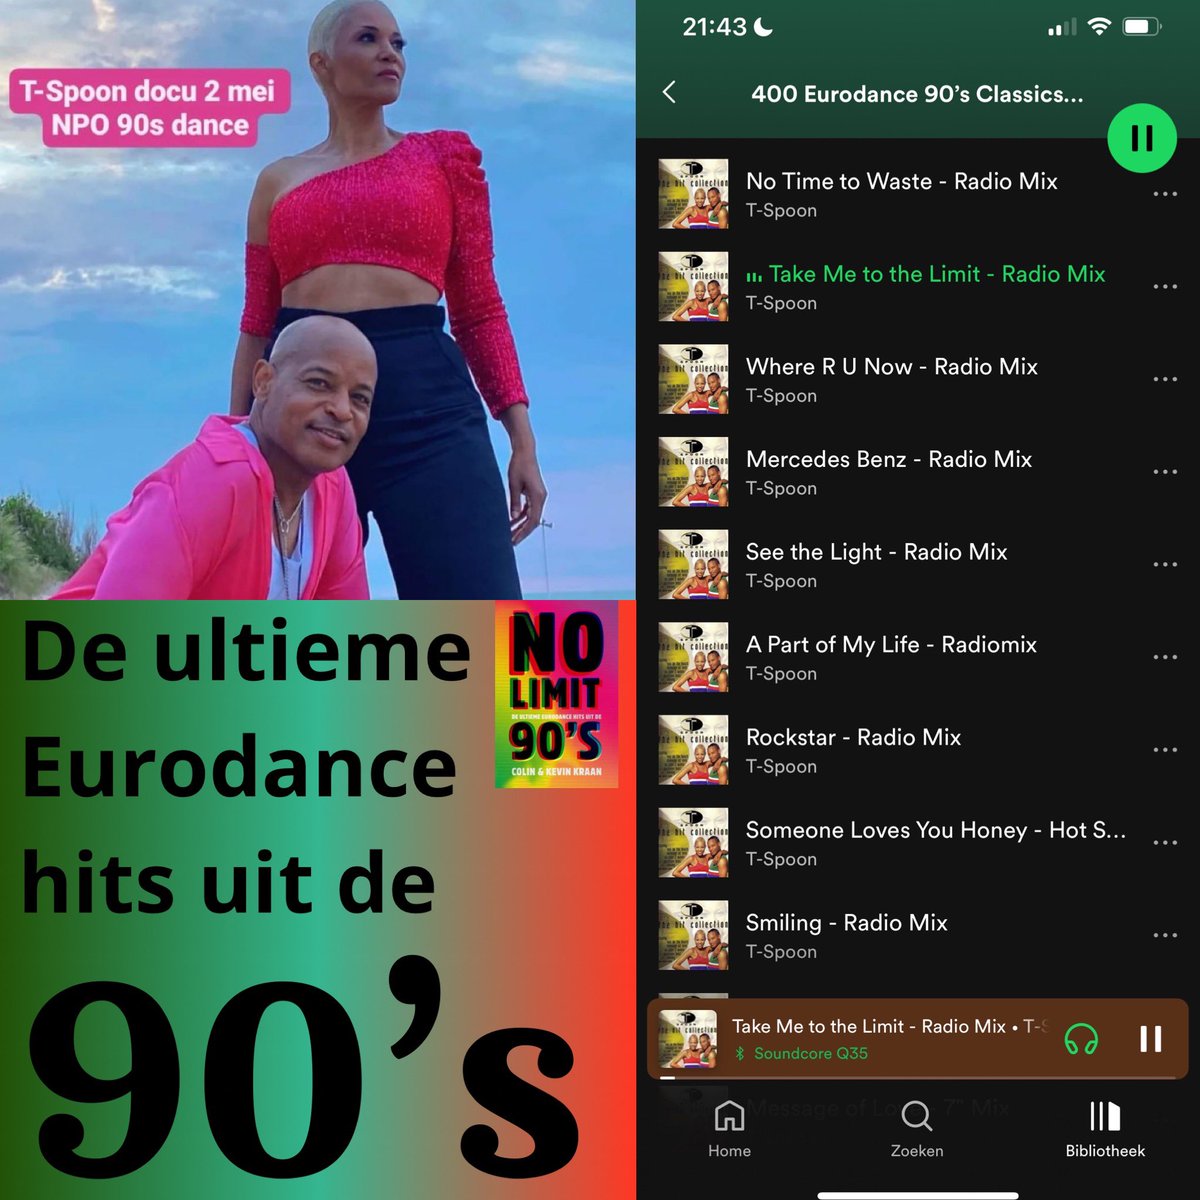 Donderdag 2 mei bij NPO3 het verhaal van T-Spoon bij #90sdance met hun #eurodance & #happyhardcore hits. Je vindt ze natuurlijk allemaal in de Spotify playlist 400 Eurodance 90’s Classics ➡️ open.spotify.com/playlist/0d8kD…